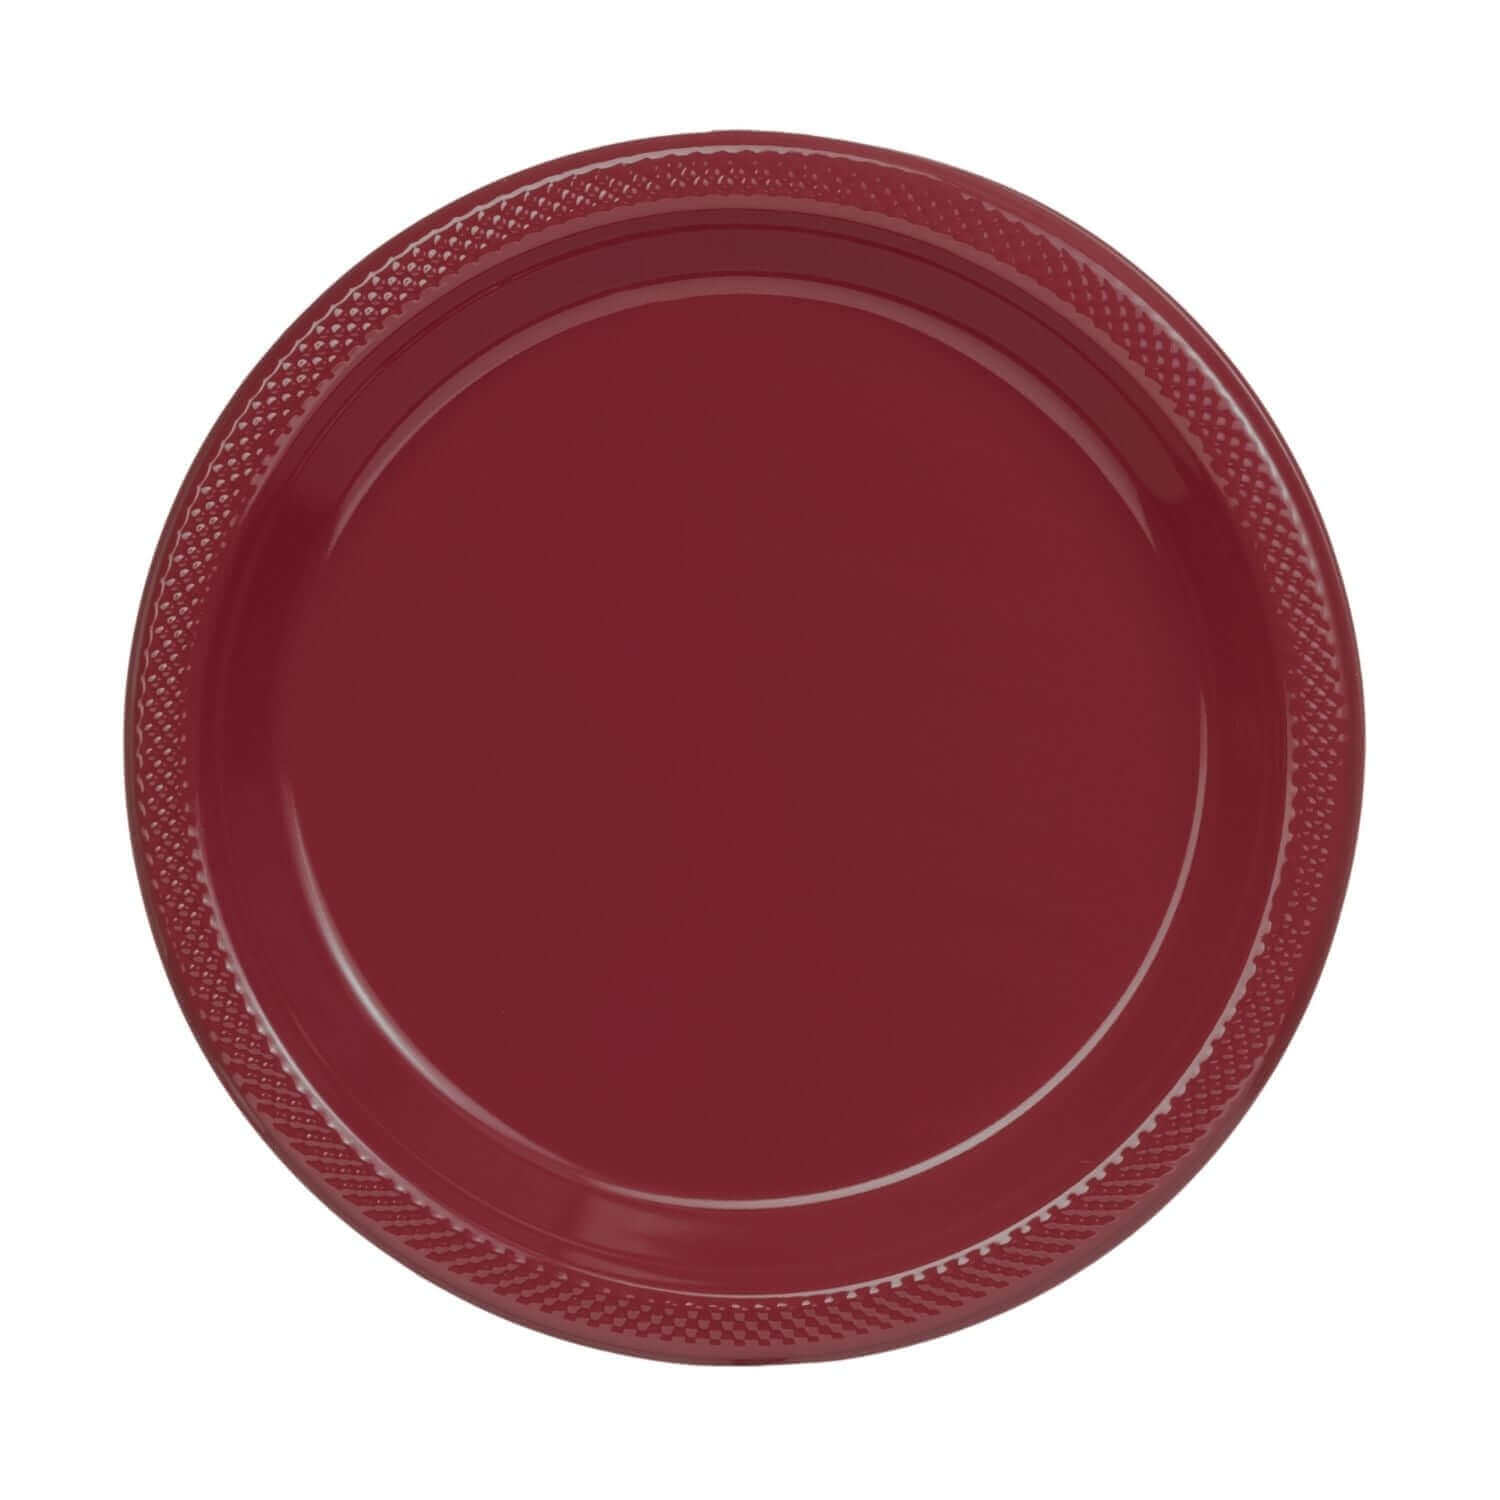 10" | Burgundy Plastic Plates | 600 Count - Yom Tov Settings